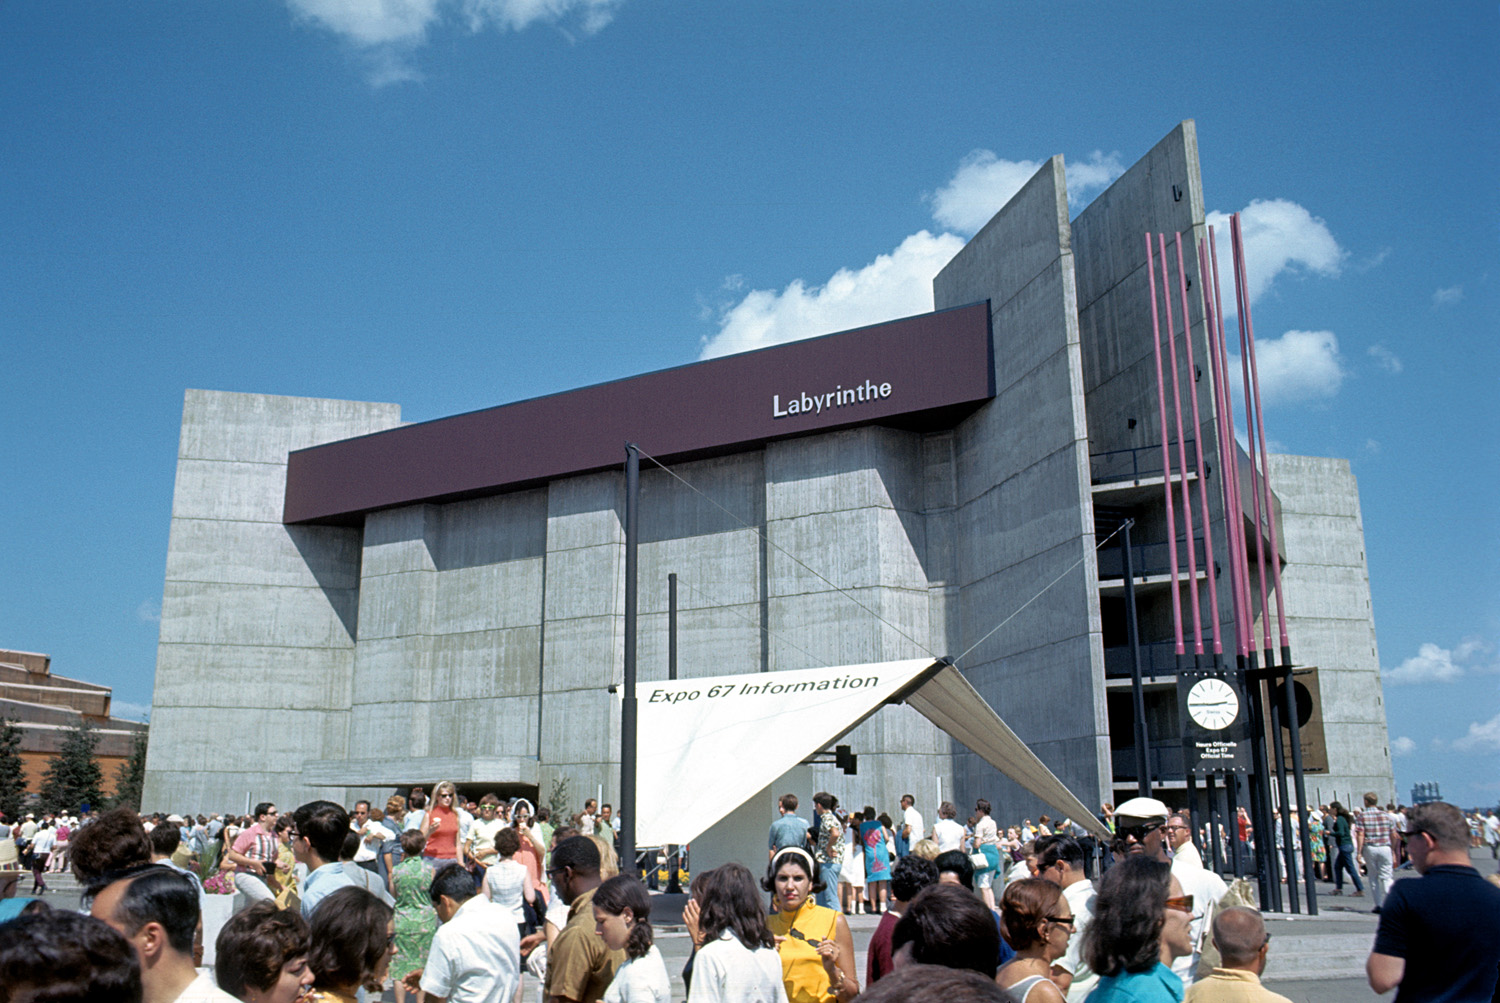 Vue d'ensemble du pavillon Labyrinthe avec une foule de visiteurs devant